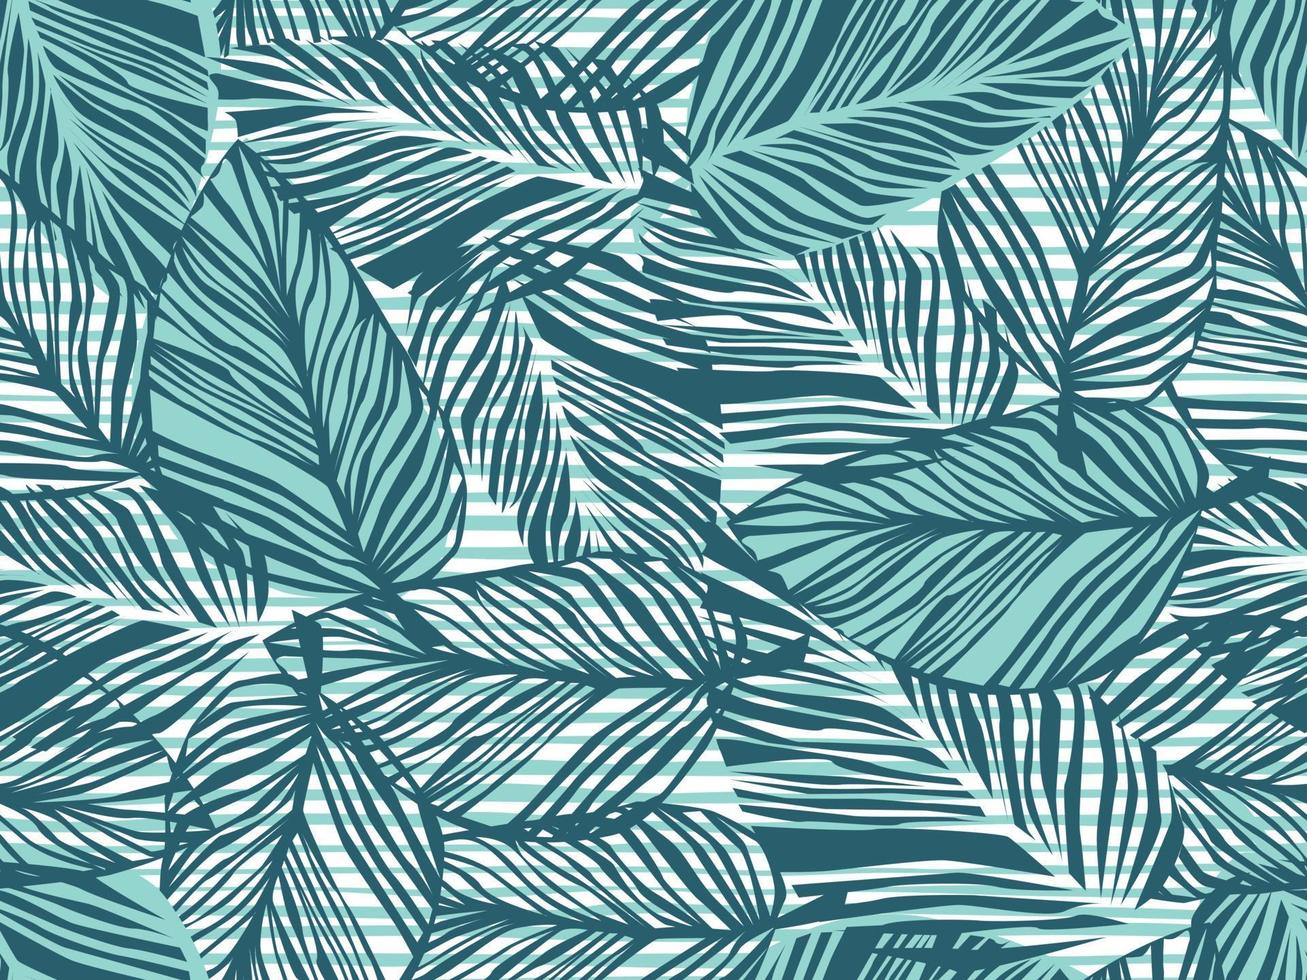 motif tropical, feuilles de palmier fond floral vectorielle continue. plante exotique sur illustration d'impression de rayures. imprimé jungle nature estivale. feuilles de palmier sur les lignes de peinture. vecteur